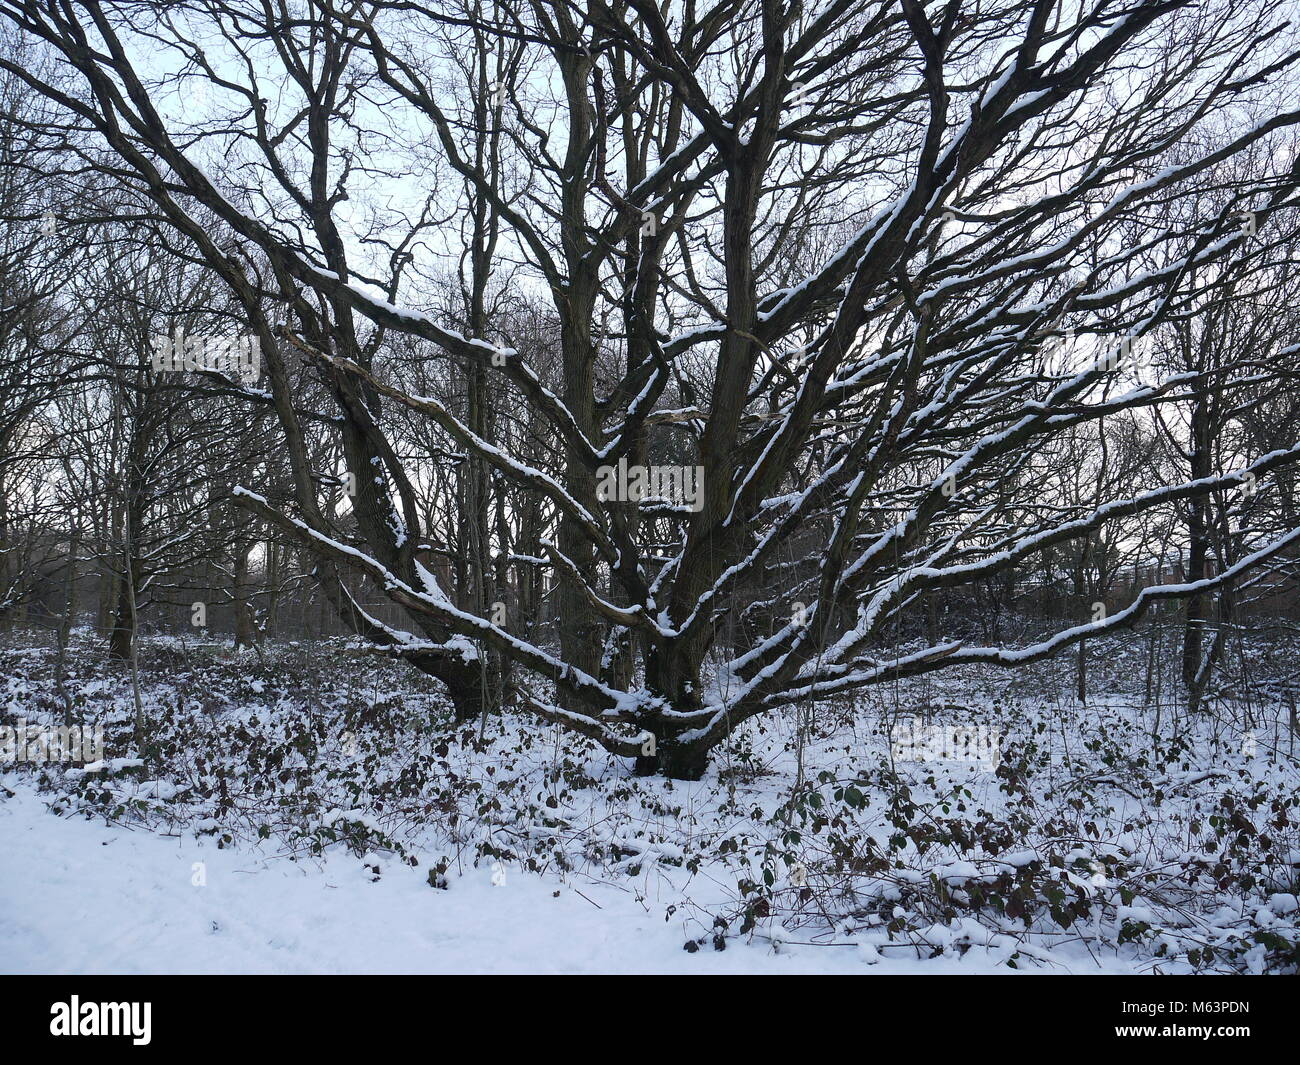 Londres, Royaume-Uni. 28 Février, 2018. Snow blast hits London, Claybury Park dans une couverture de blanc. Katherine cotisant Da Silva/ Alamy Live News Banque D'Images